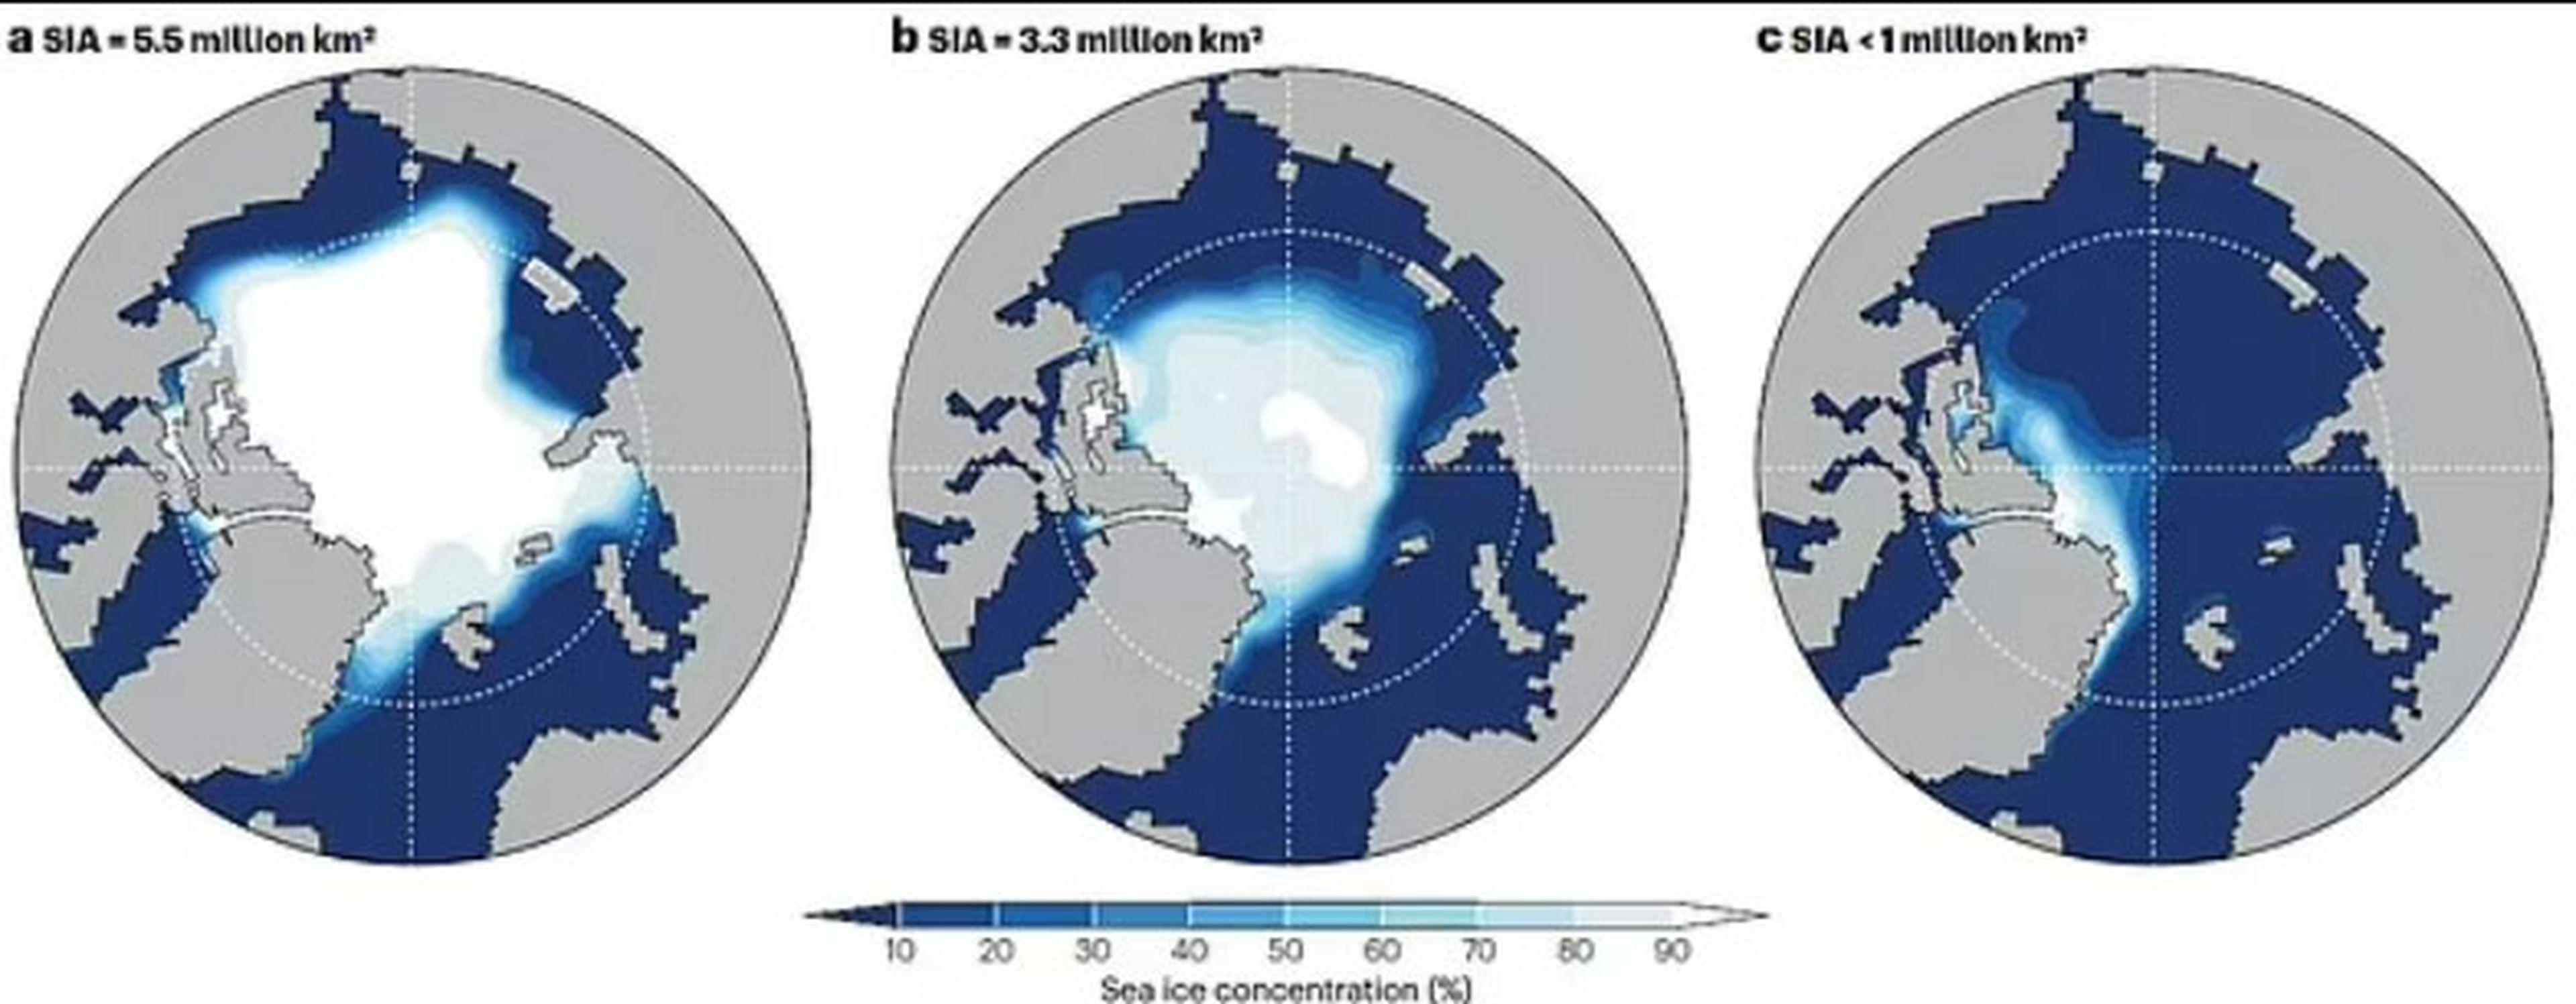 El Ártico podría quedar casi libre de hielo en solo 10 años